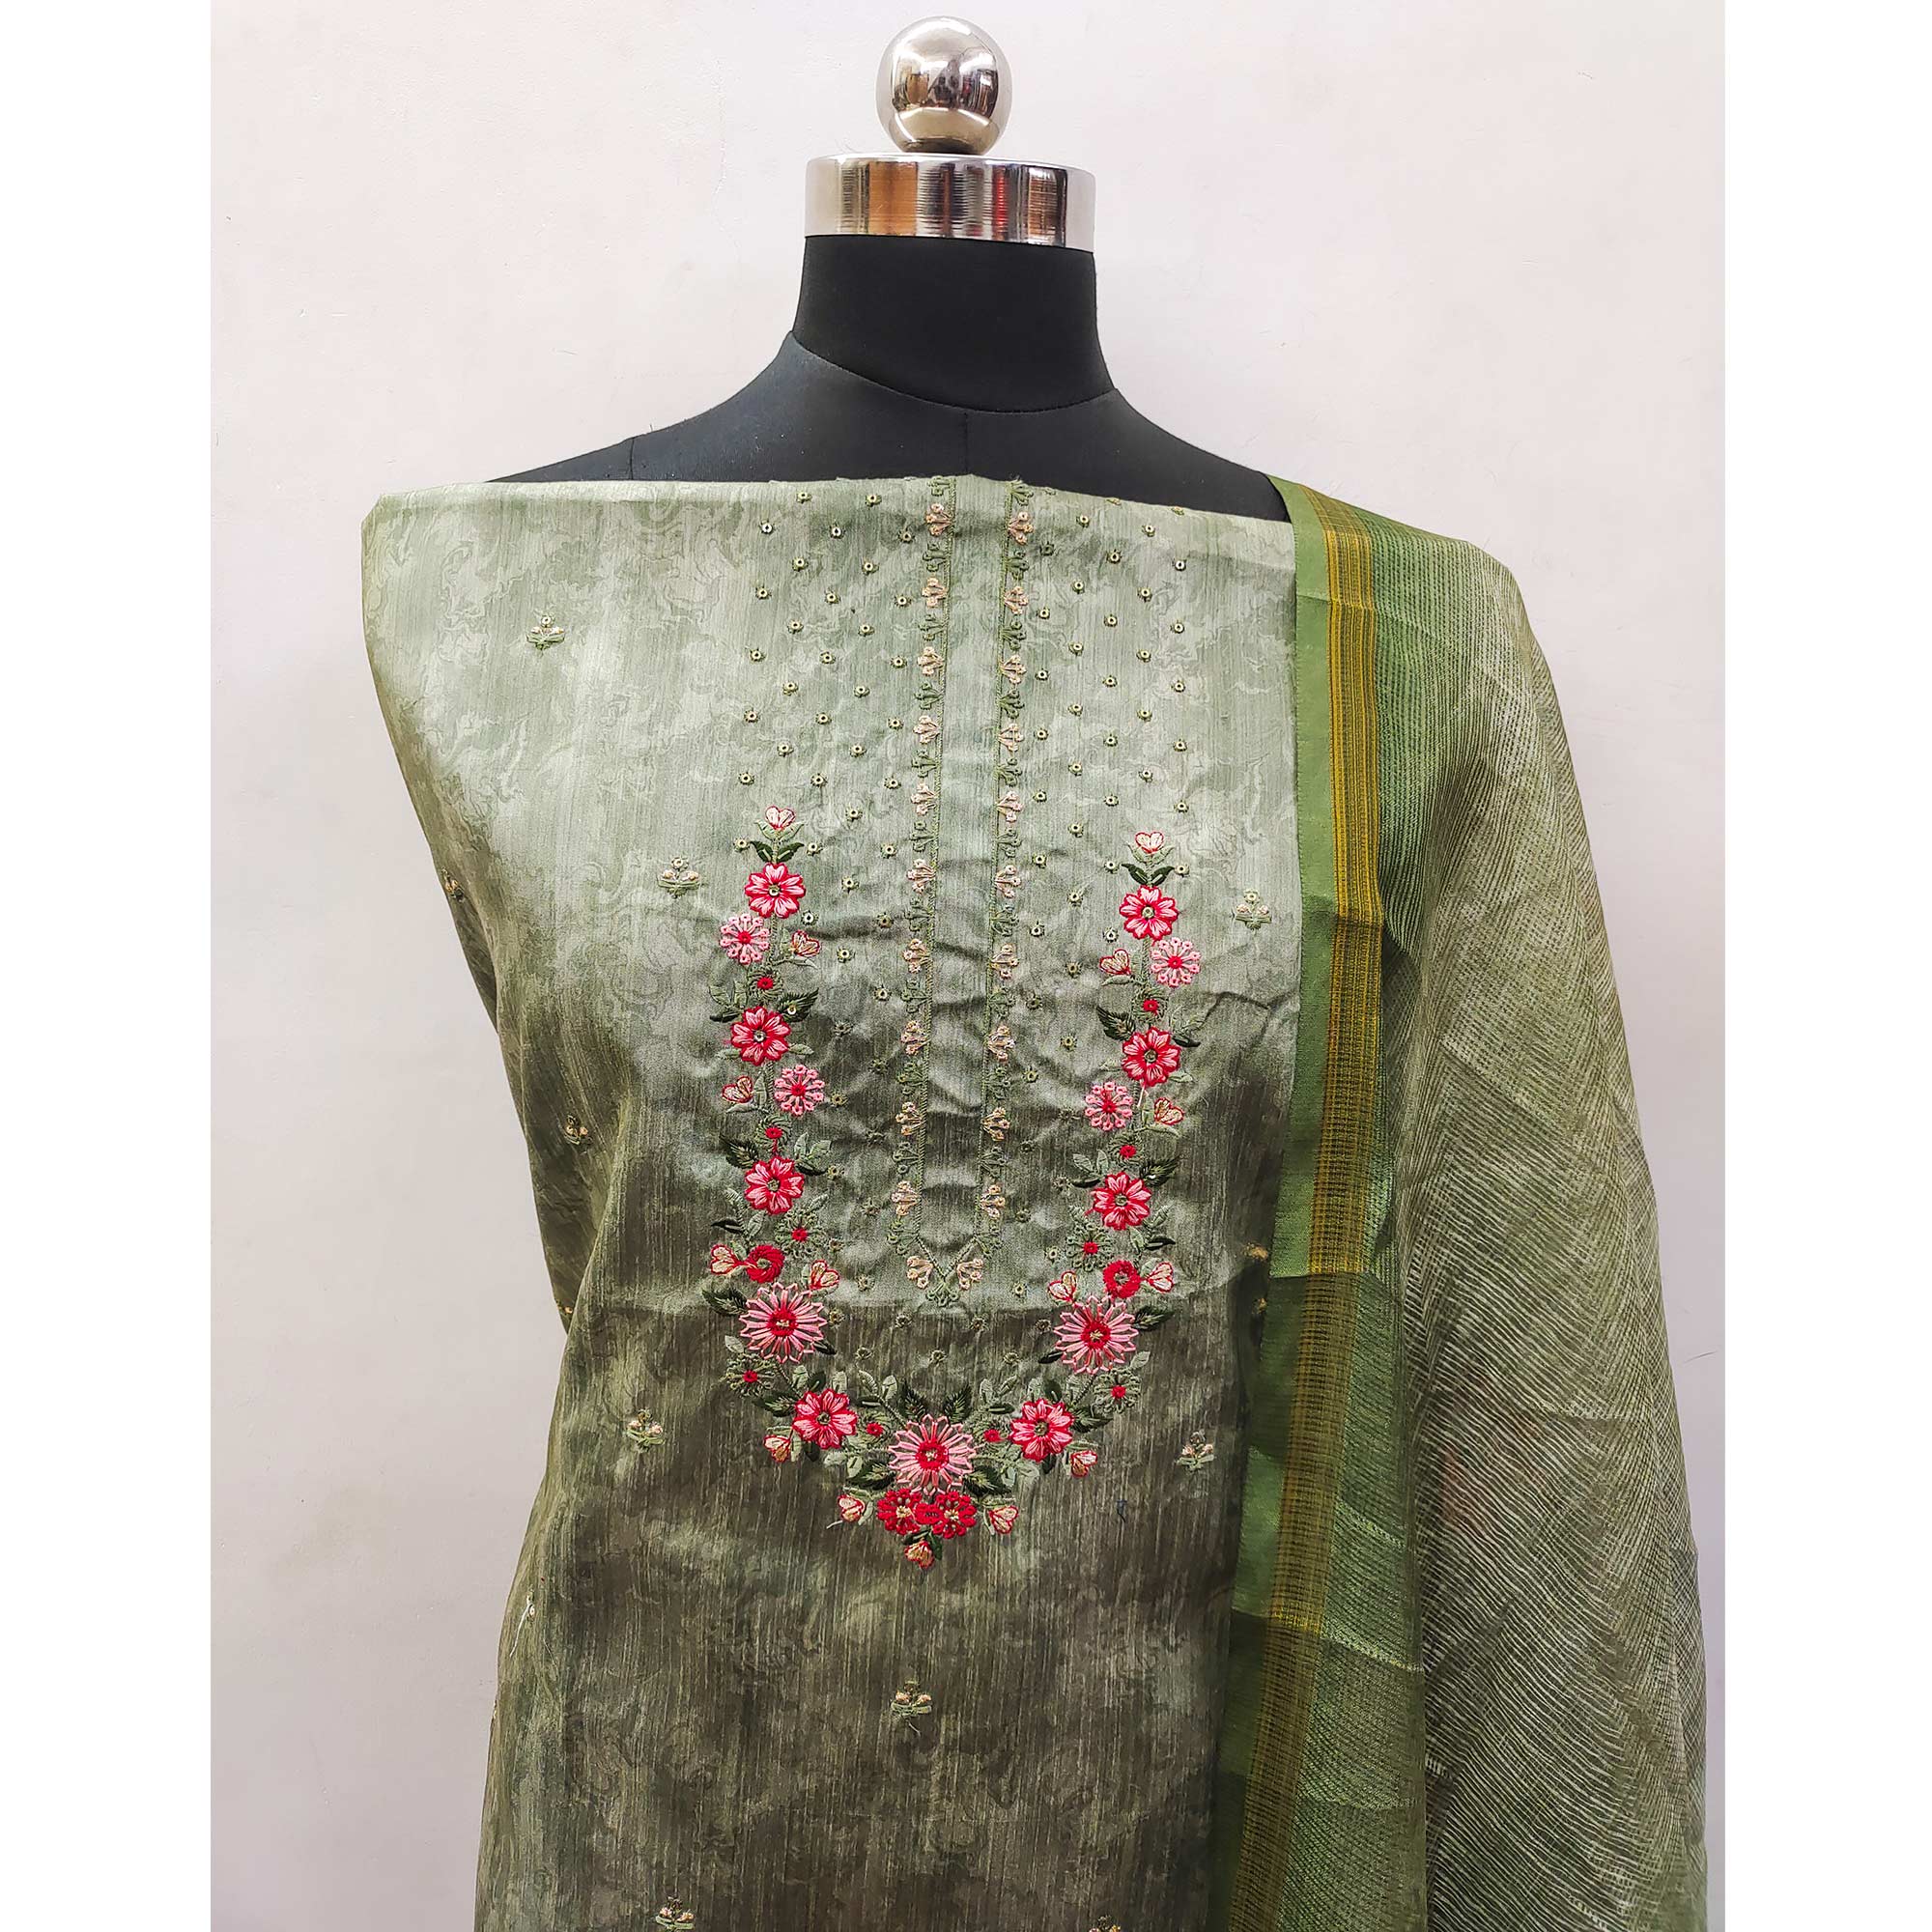 Green Embroidered Art Silk Dress Material